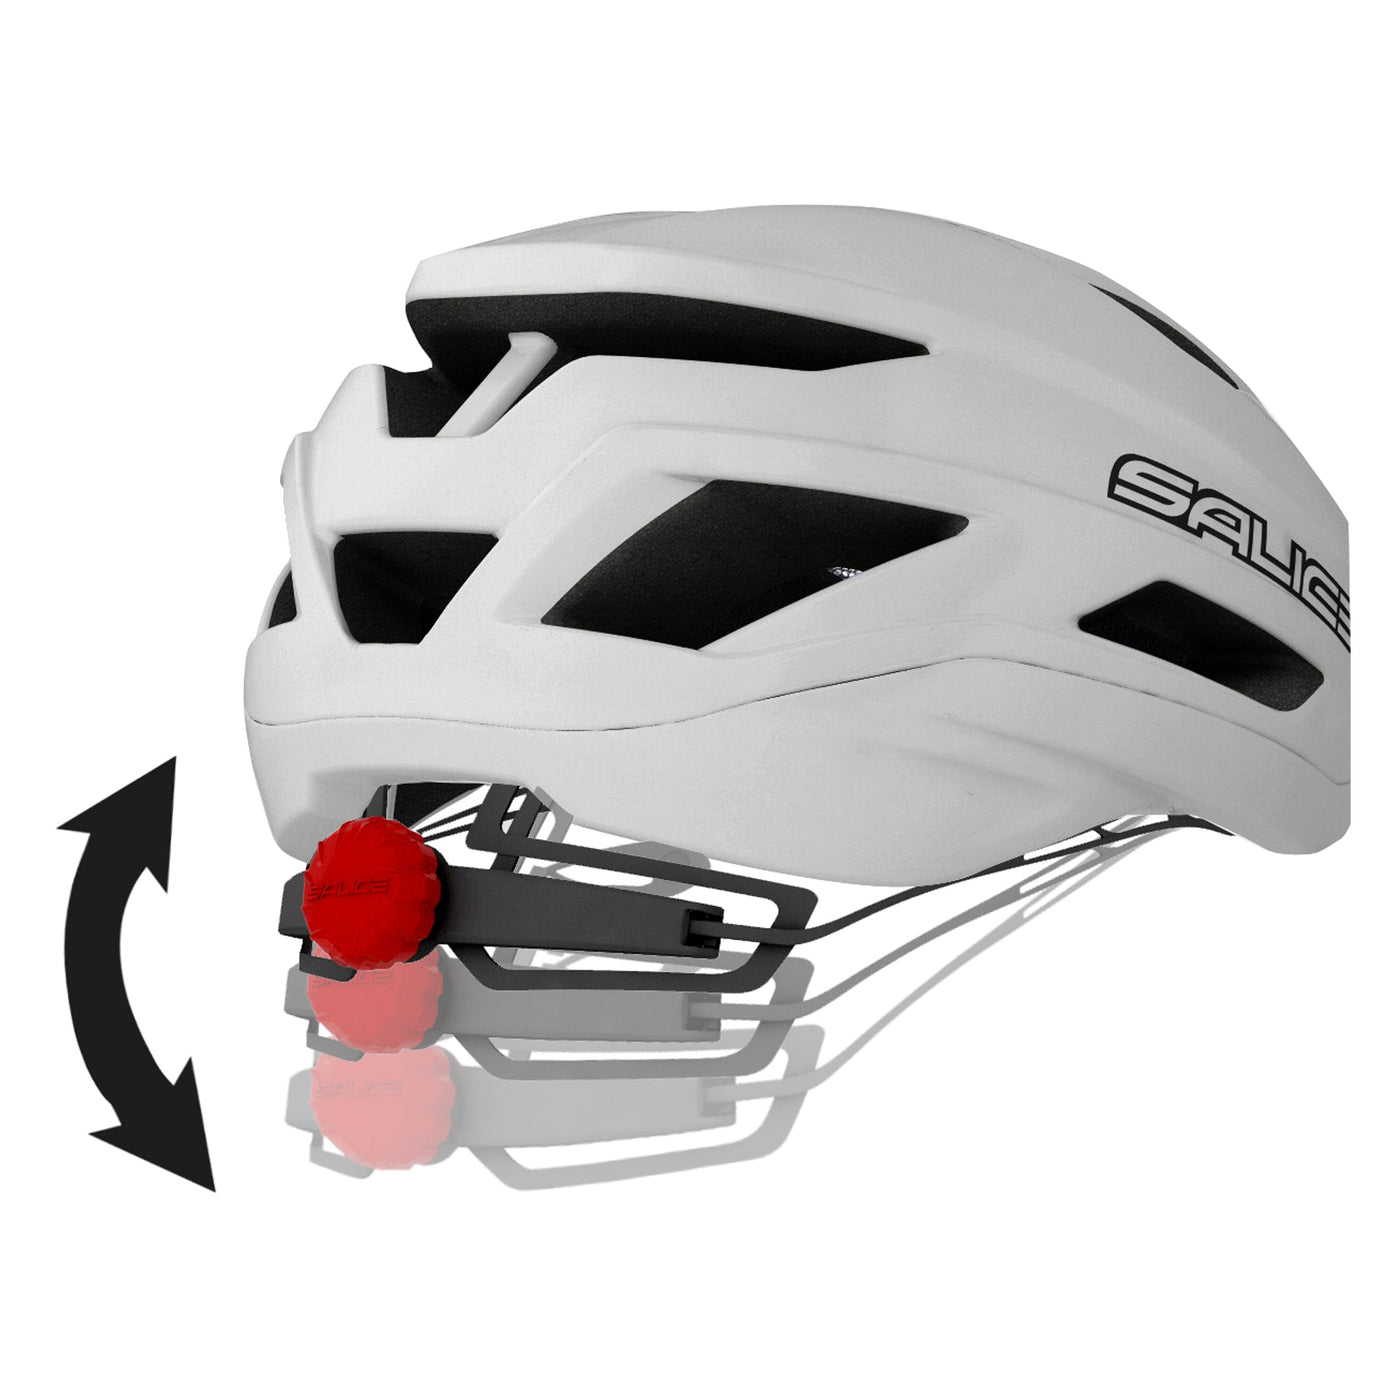 Salice Levante Helmet ITA White